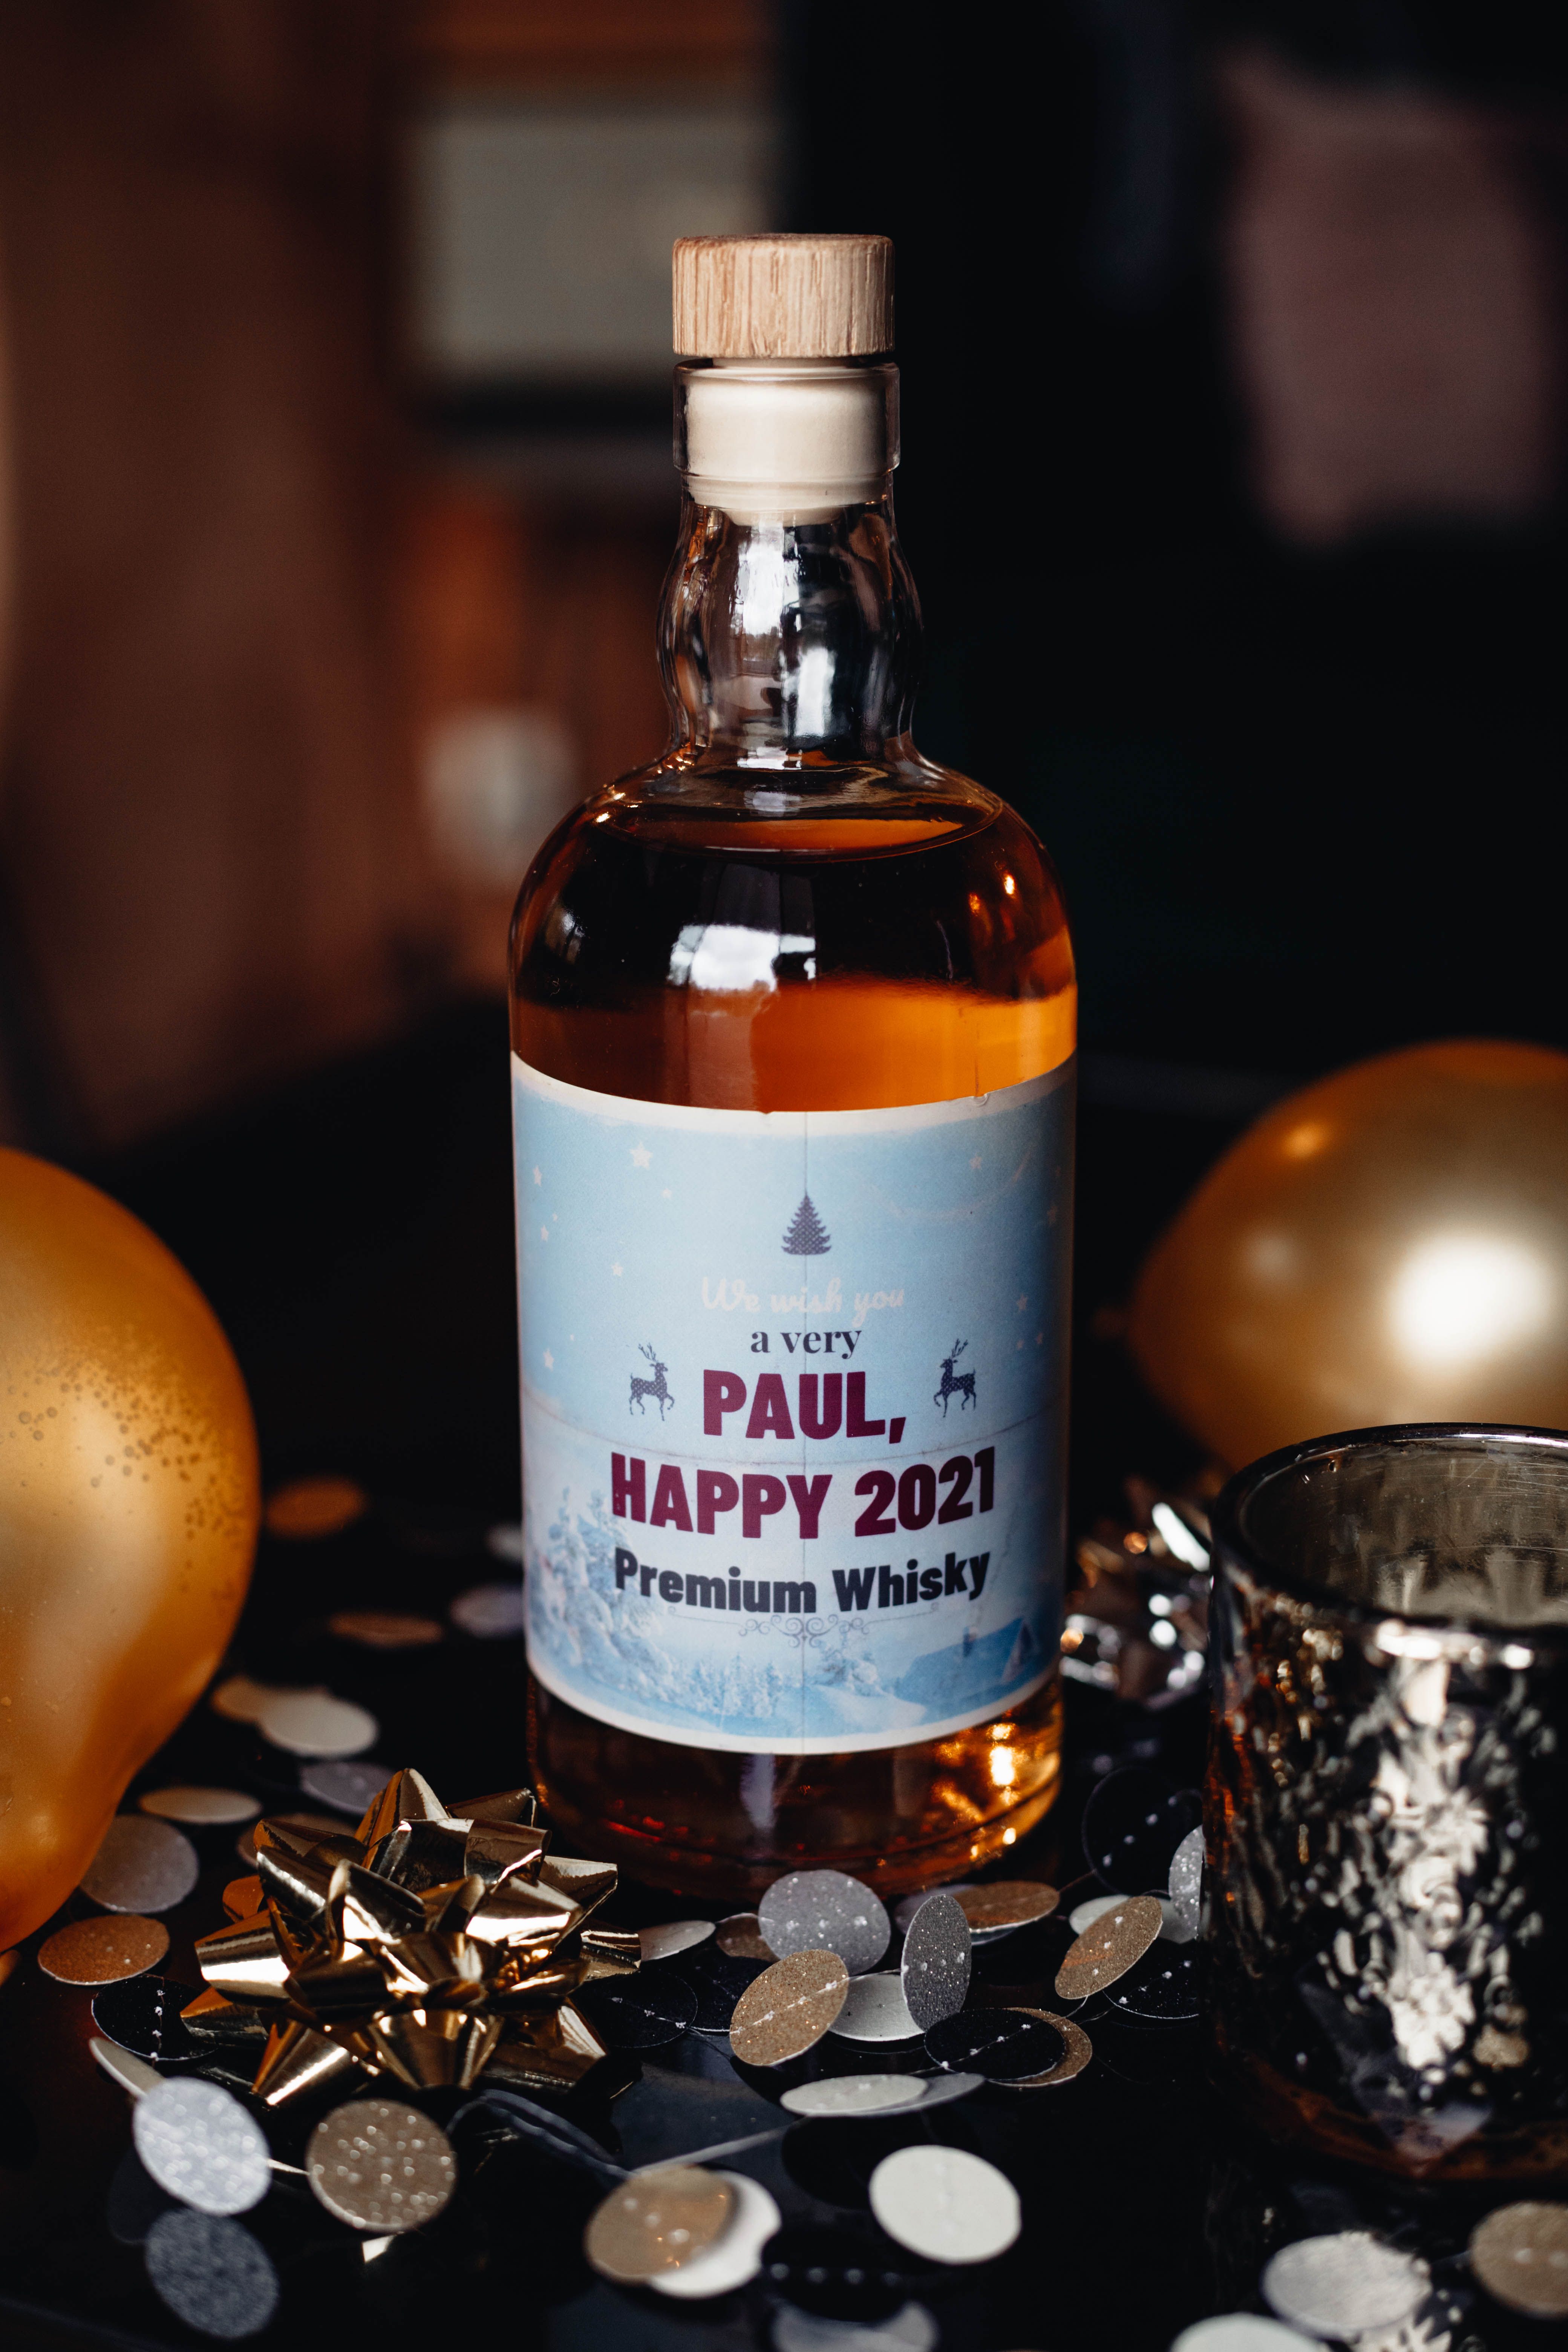 Happy New Year Paul Whisky